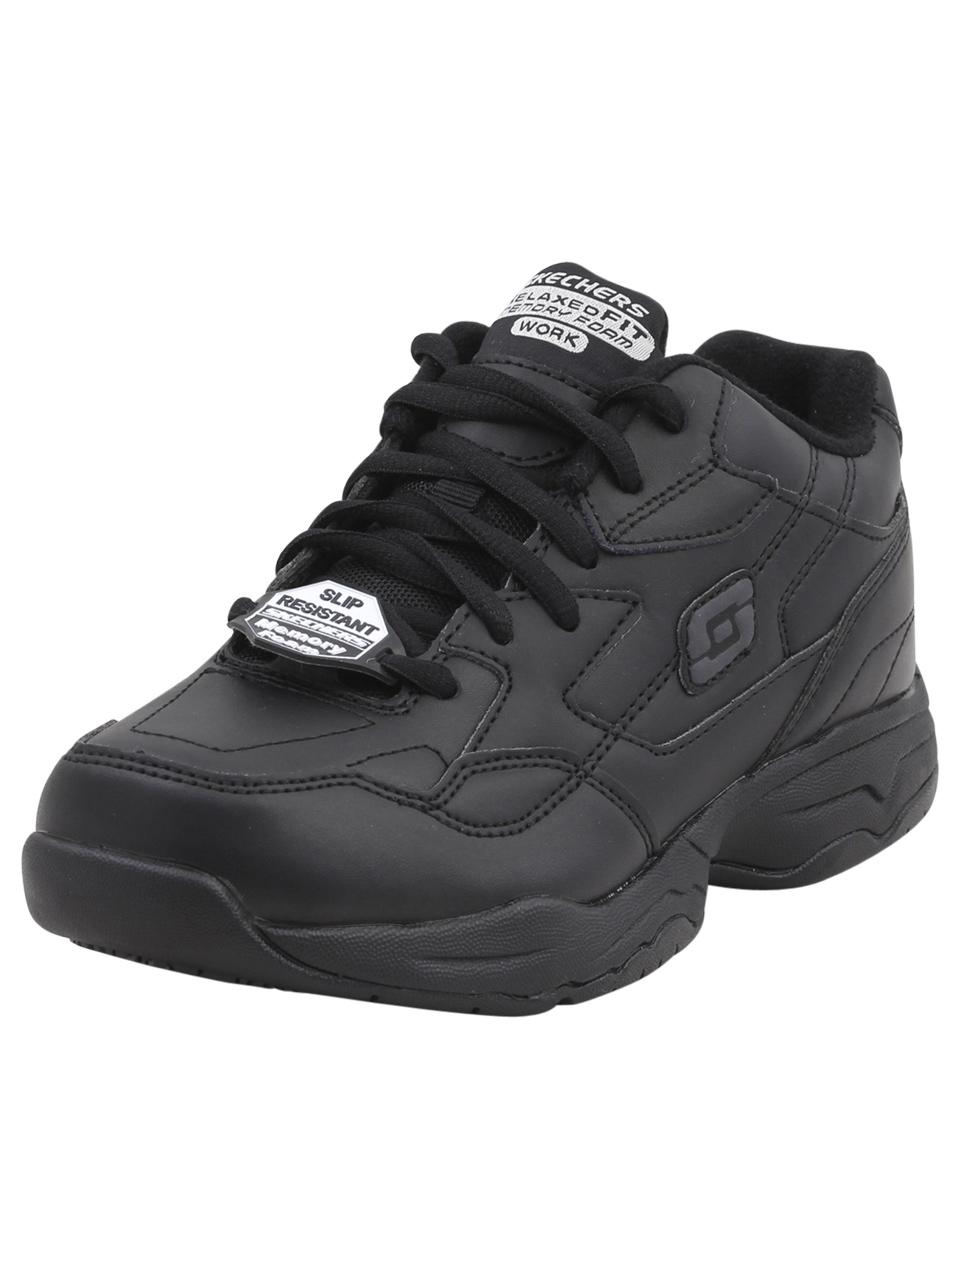 Skechers Work Women's Felton Albie Memory Foam Slip Resistant Sneakers Shoes - Black - 6 B(M) US